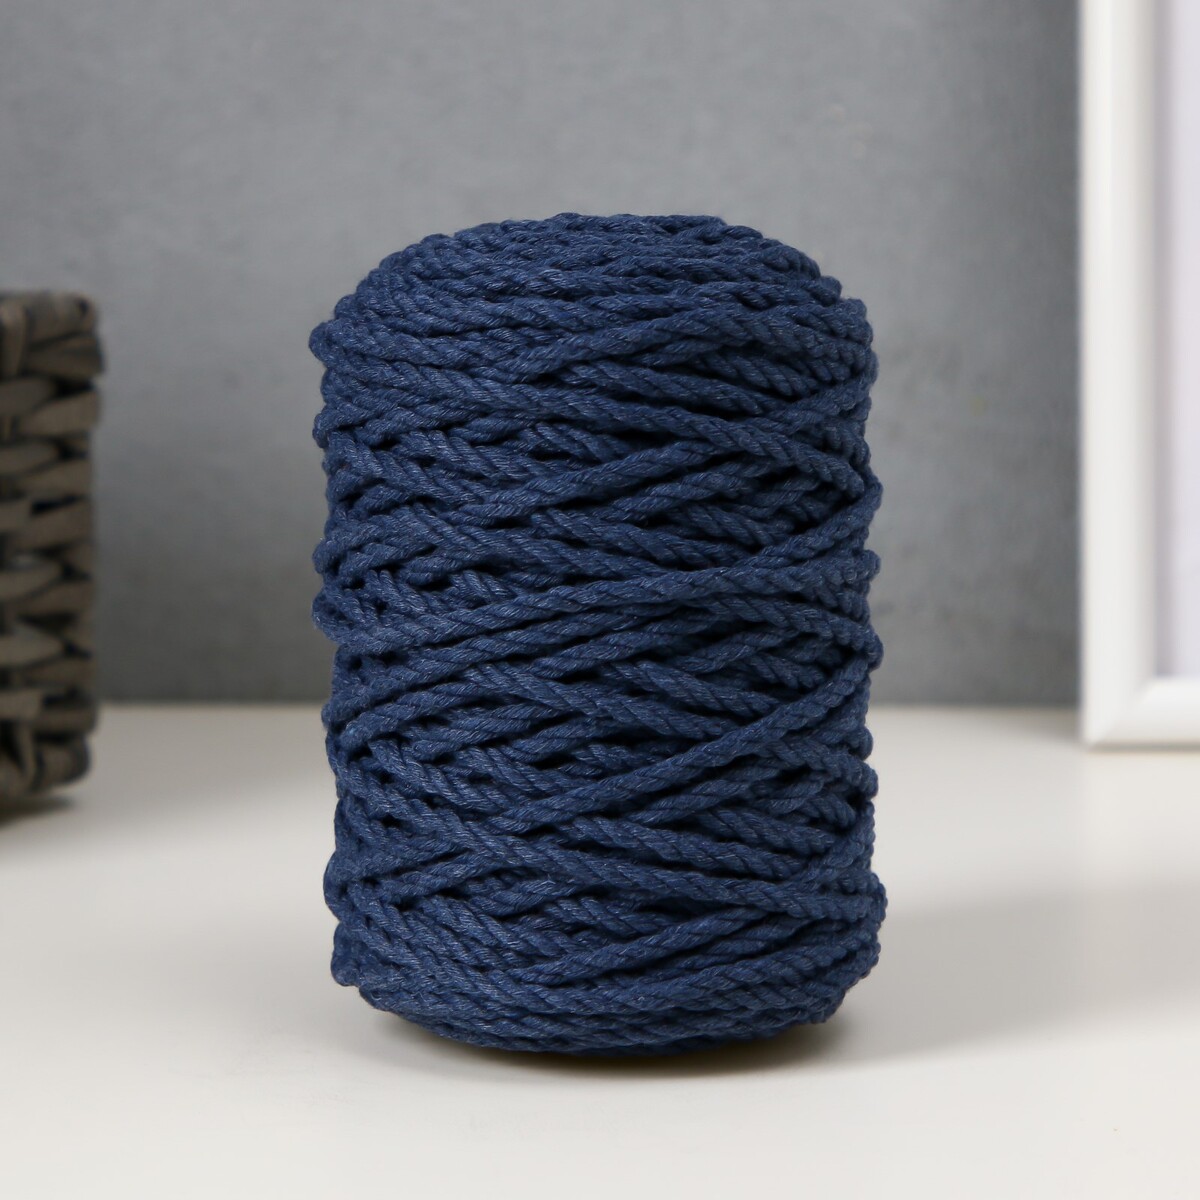 Шнур для вязания 80% хлопок, 20% полиэстер крученый 3 мм, 185г/45м,14-джинсовый фартук для мастера джинсовый